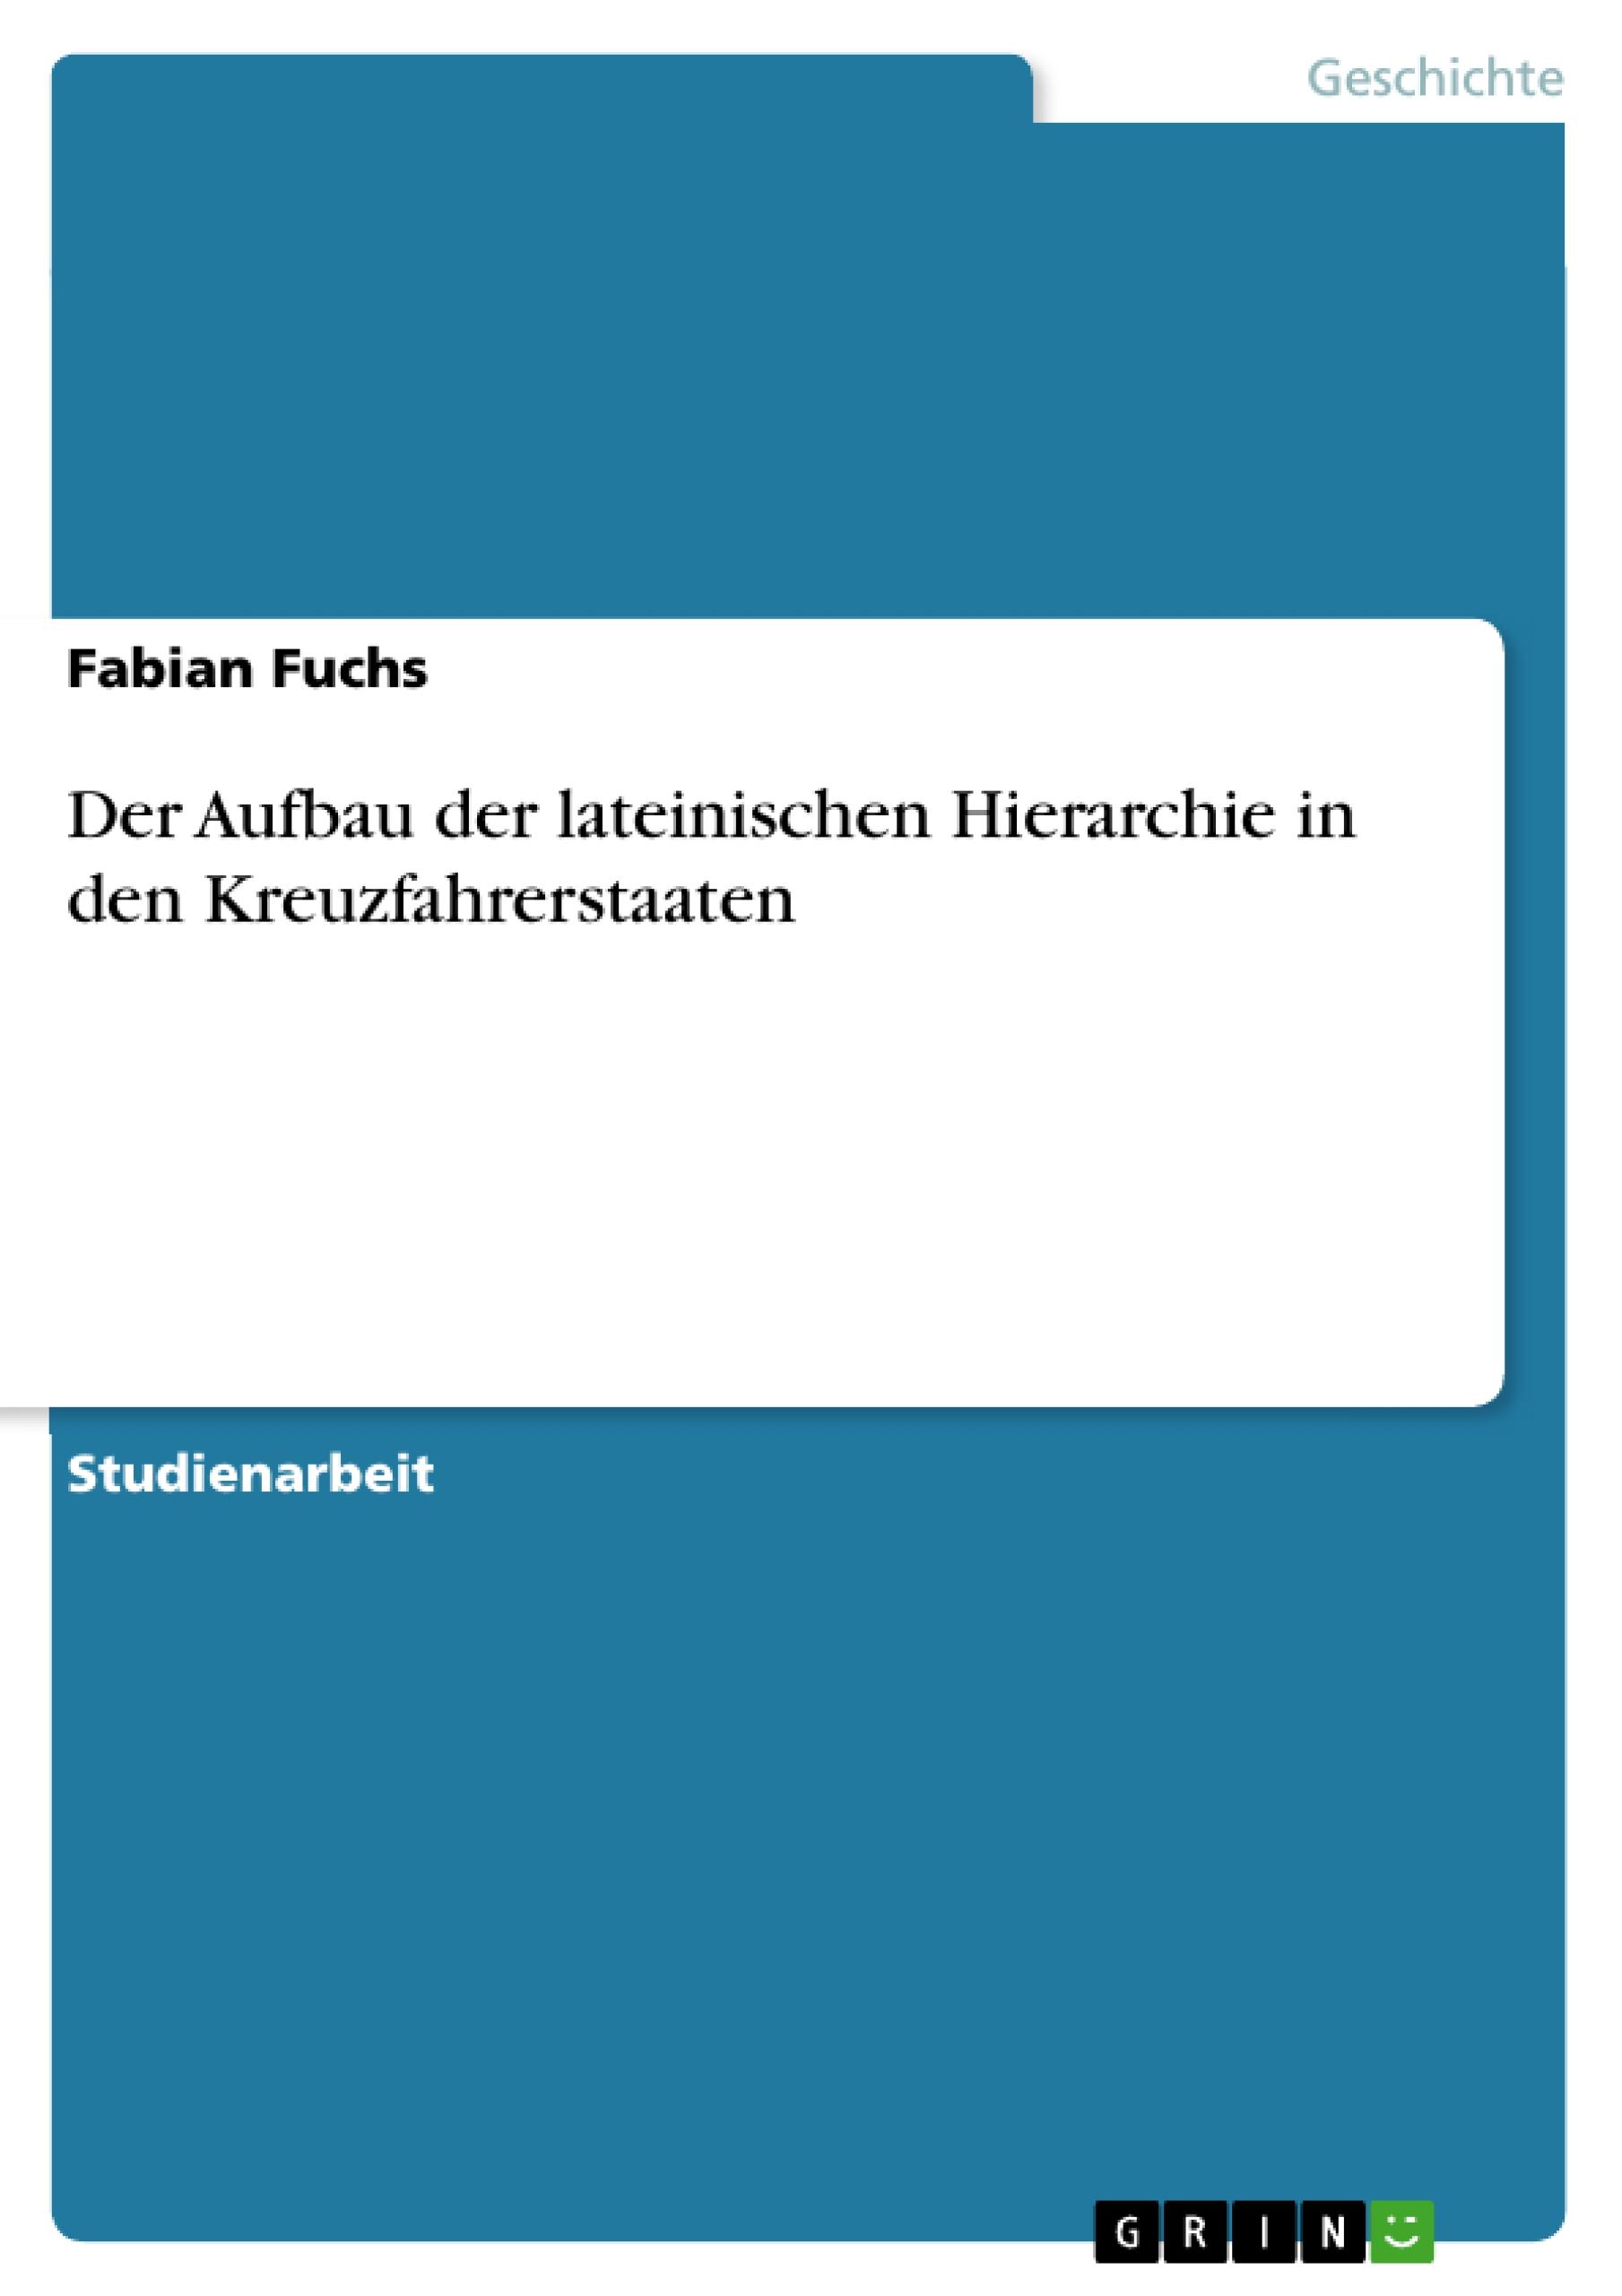 Der Aufbau der lateinischen Hierarchie in den Kreuzfahrerstaaten - Fuchs, Fabian